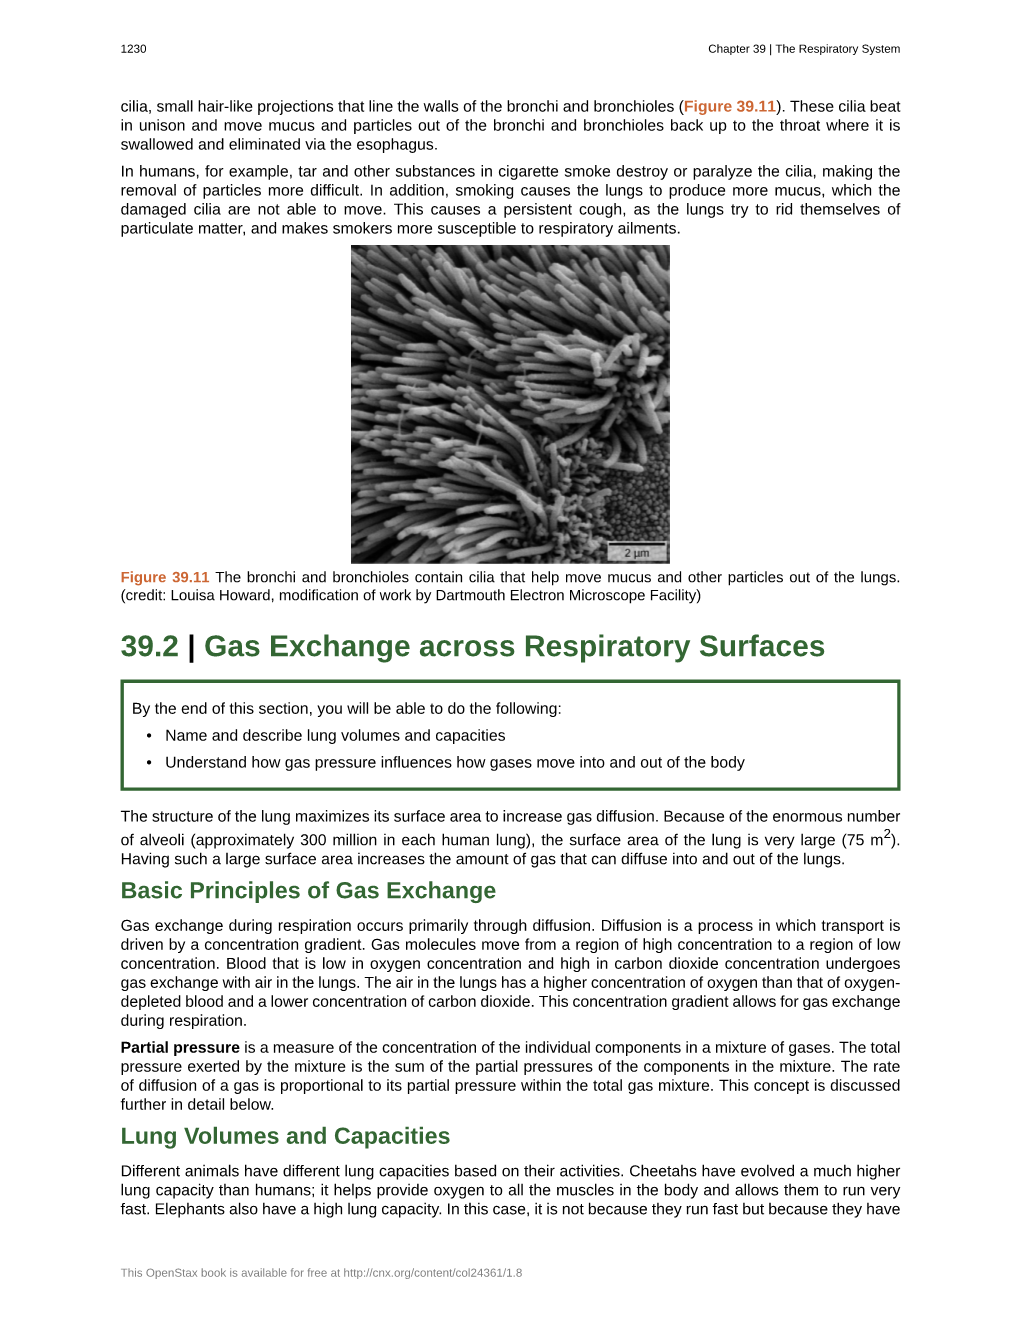 39.2 Gas Exchange Across Respiratory